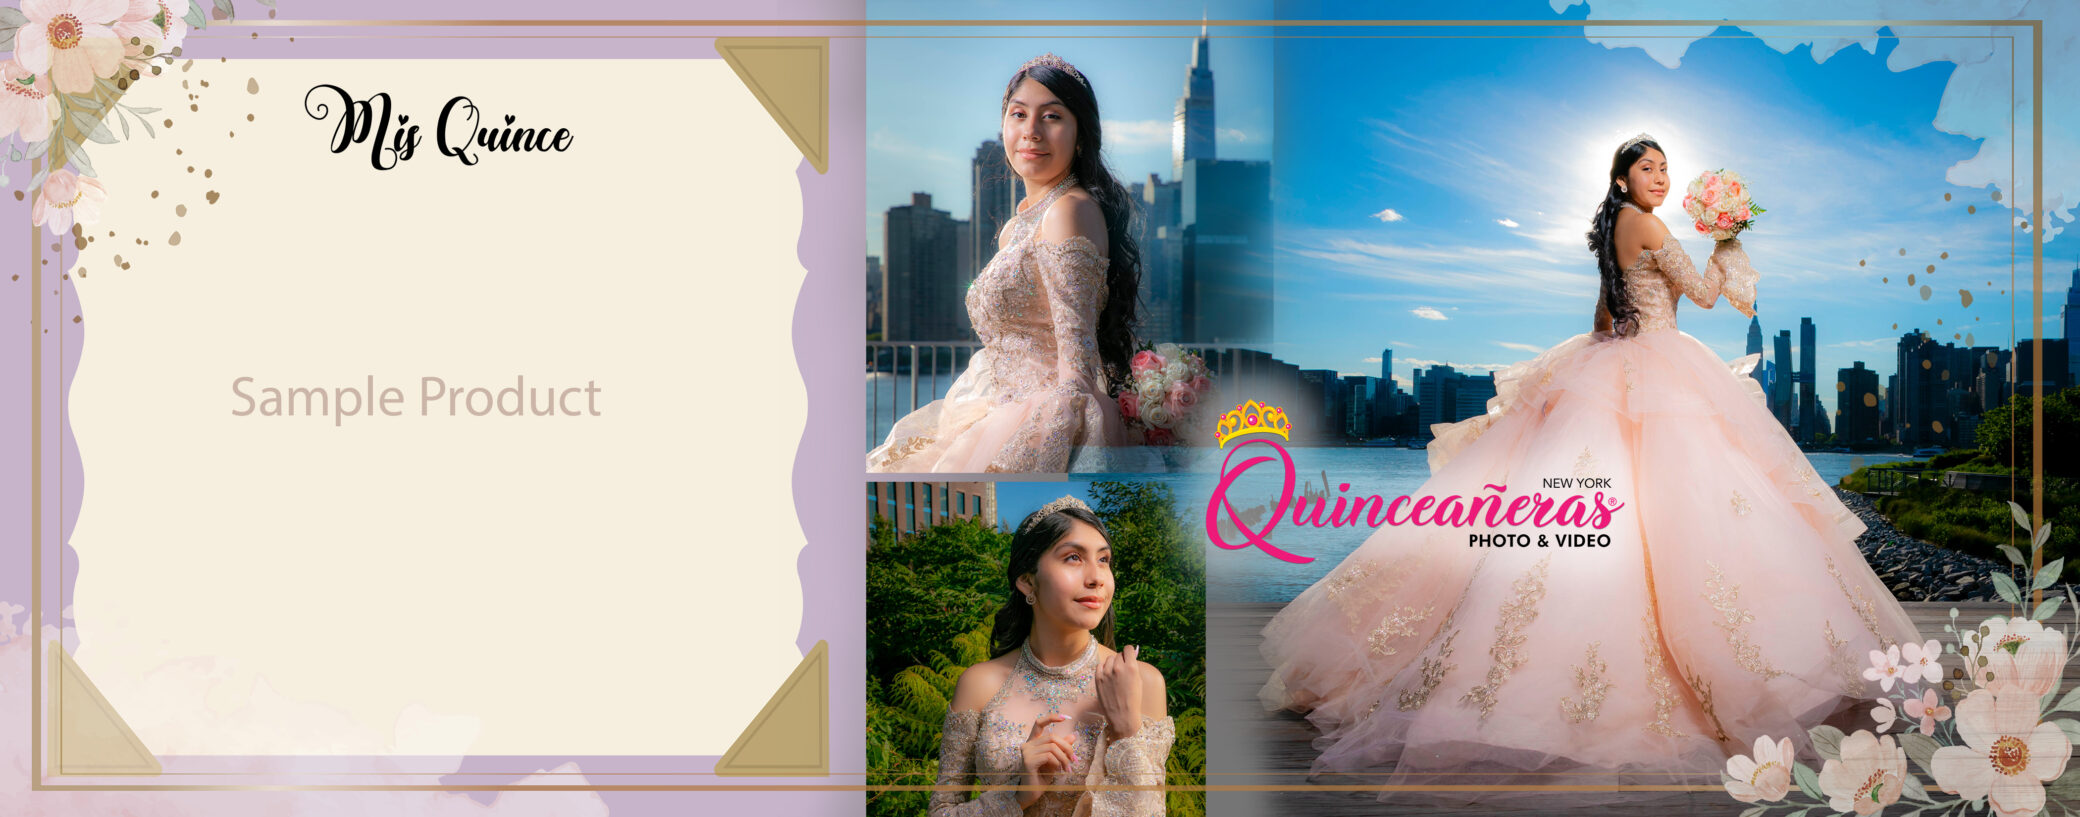 Tips para tus Invitaciones de Quinceañera o Sweet Sixteen - Foto y video  para Quinceañeras Sweet Sixteens New York .